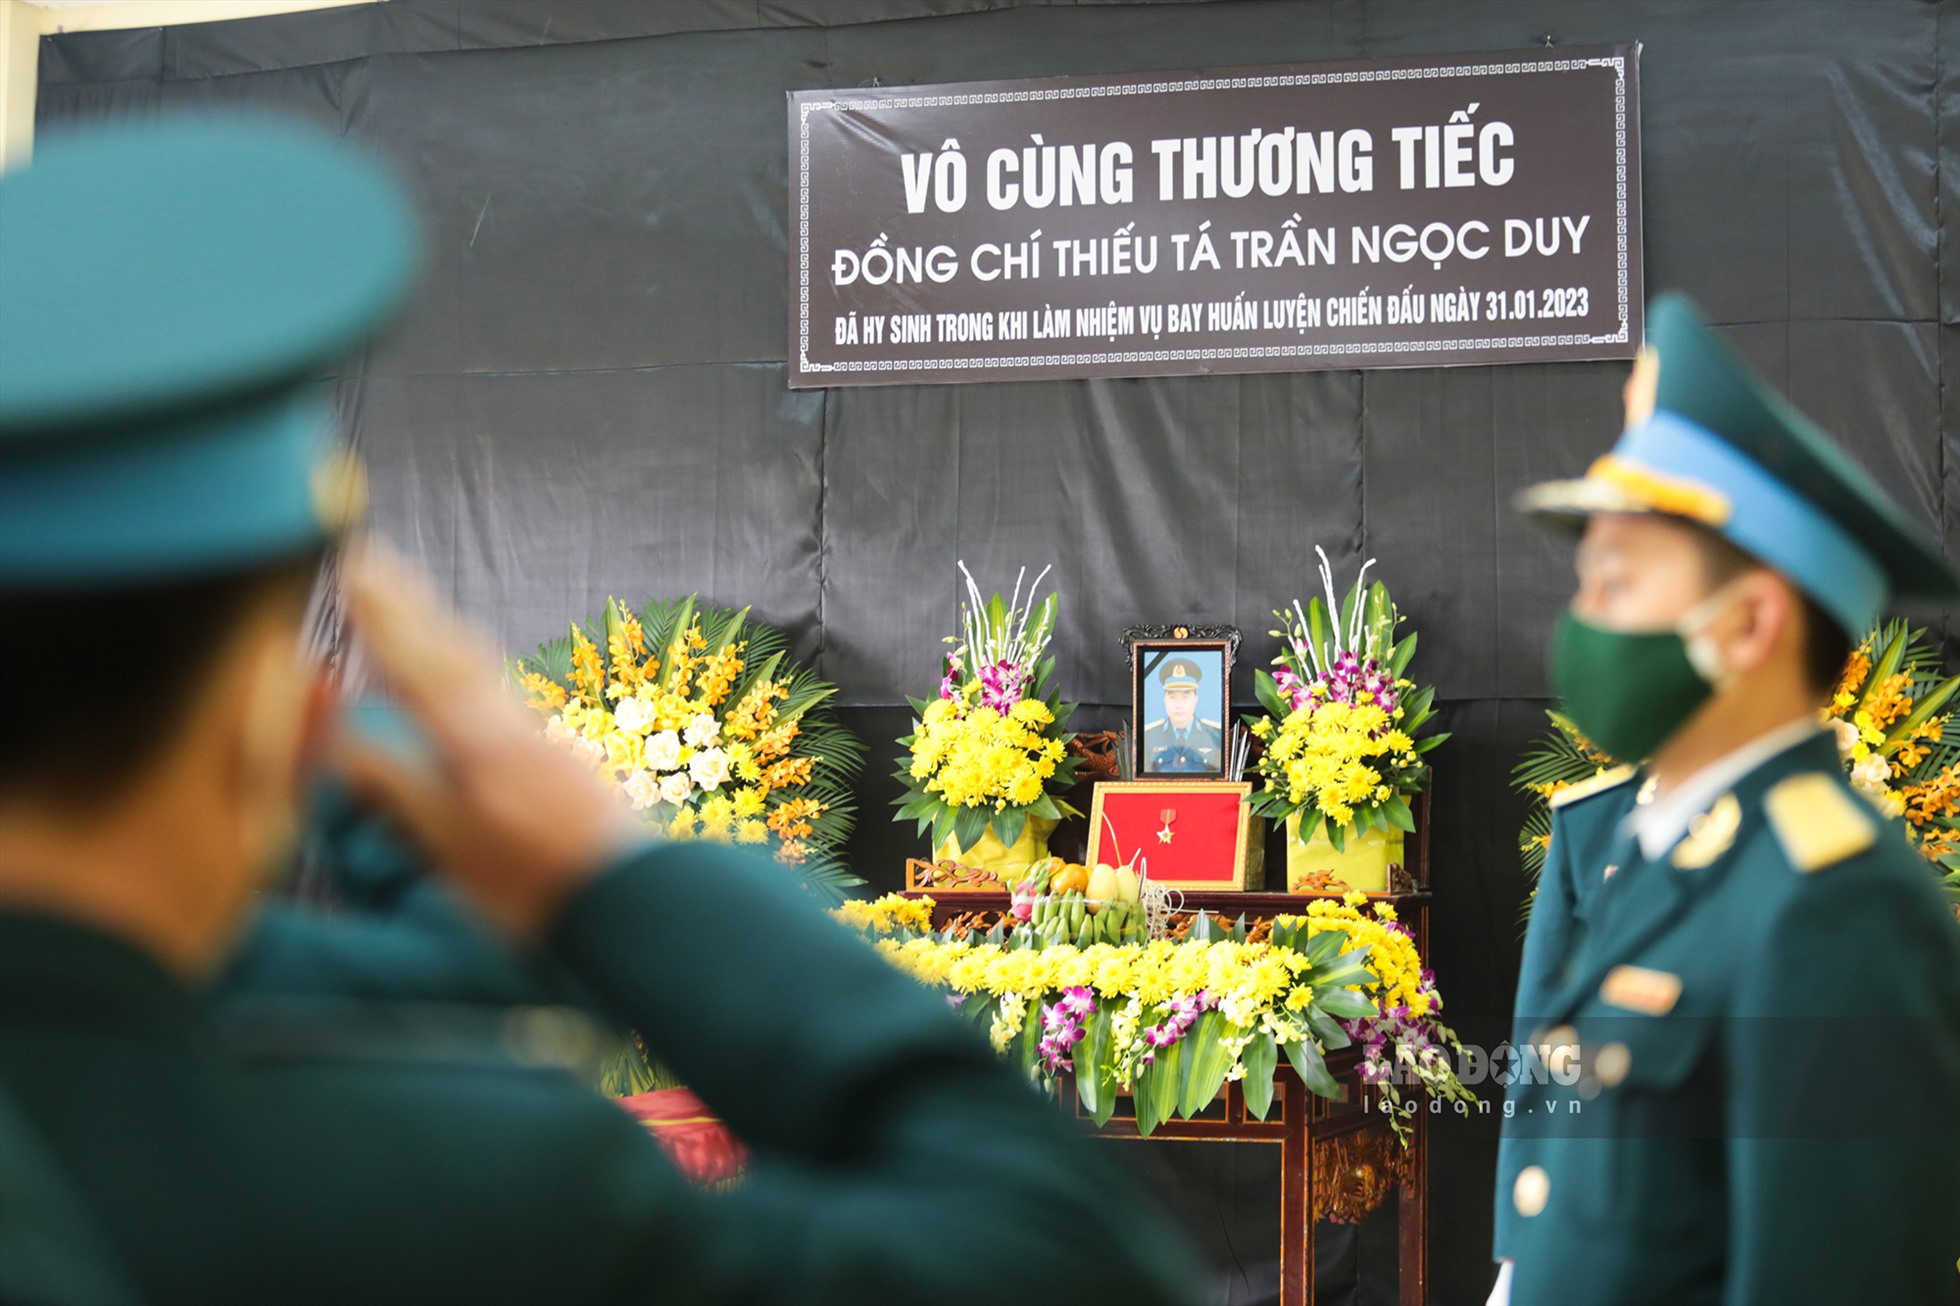 Trước đó, sớm 1.2, Bộ Quốc phòng đã ký quyết định truy thăng quân hàm thiếu tá trước thời hạn đối với Đại úy Trần Ngọc Duy, phi công hy sinh khi bay huấn luyện Su 22 tại sân bay Yên Bái.